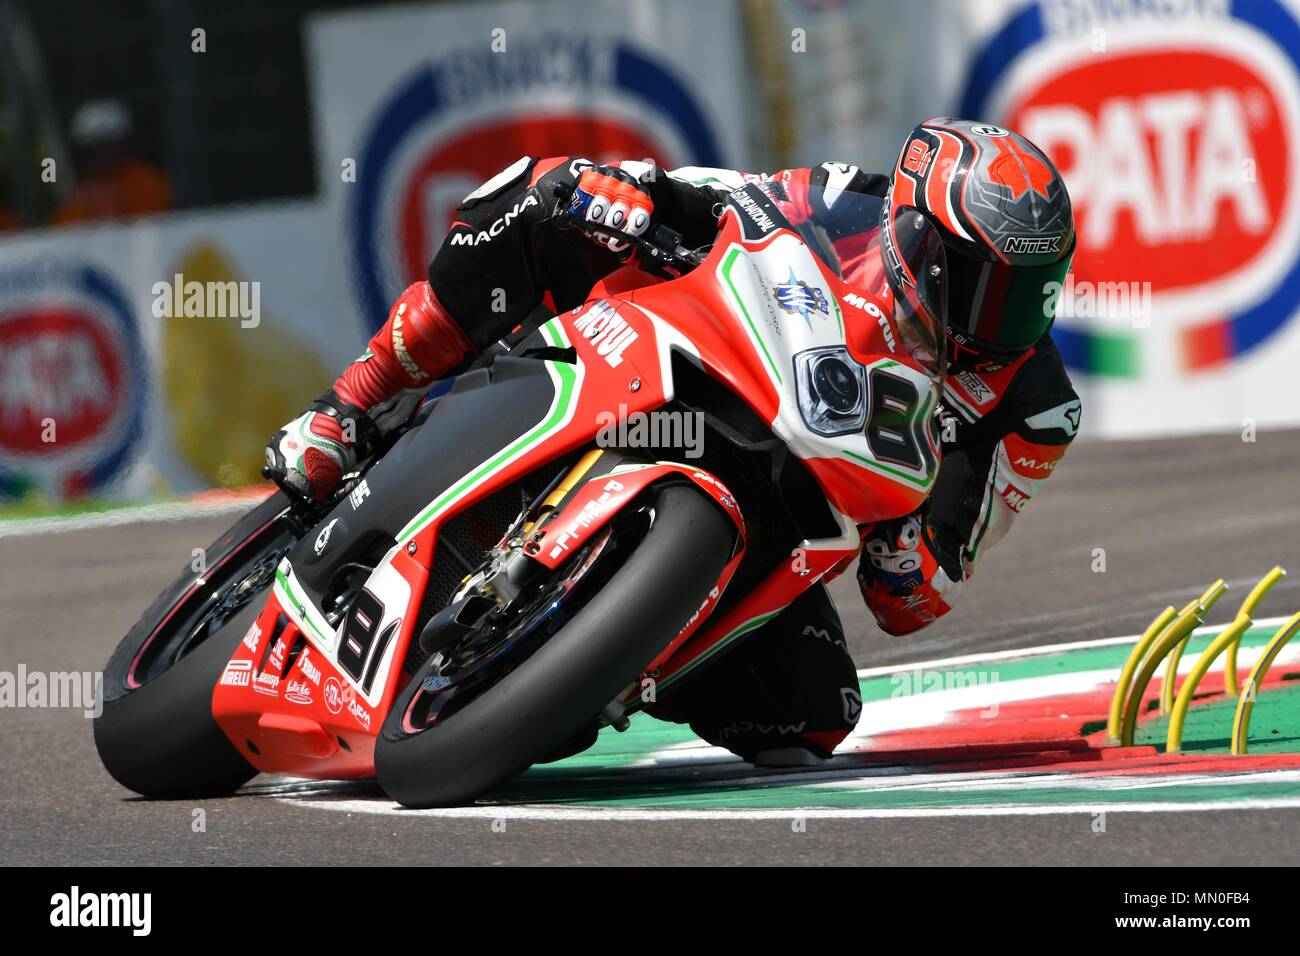 San Marino Italie - 11 mai 2018 : Jordi Torres ESP MV AGUSTA F4 1000 MV Agusta Reparto Corse, l'équipe en action pendant la séance de qualifications Superbike sur Banque D'Images